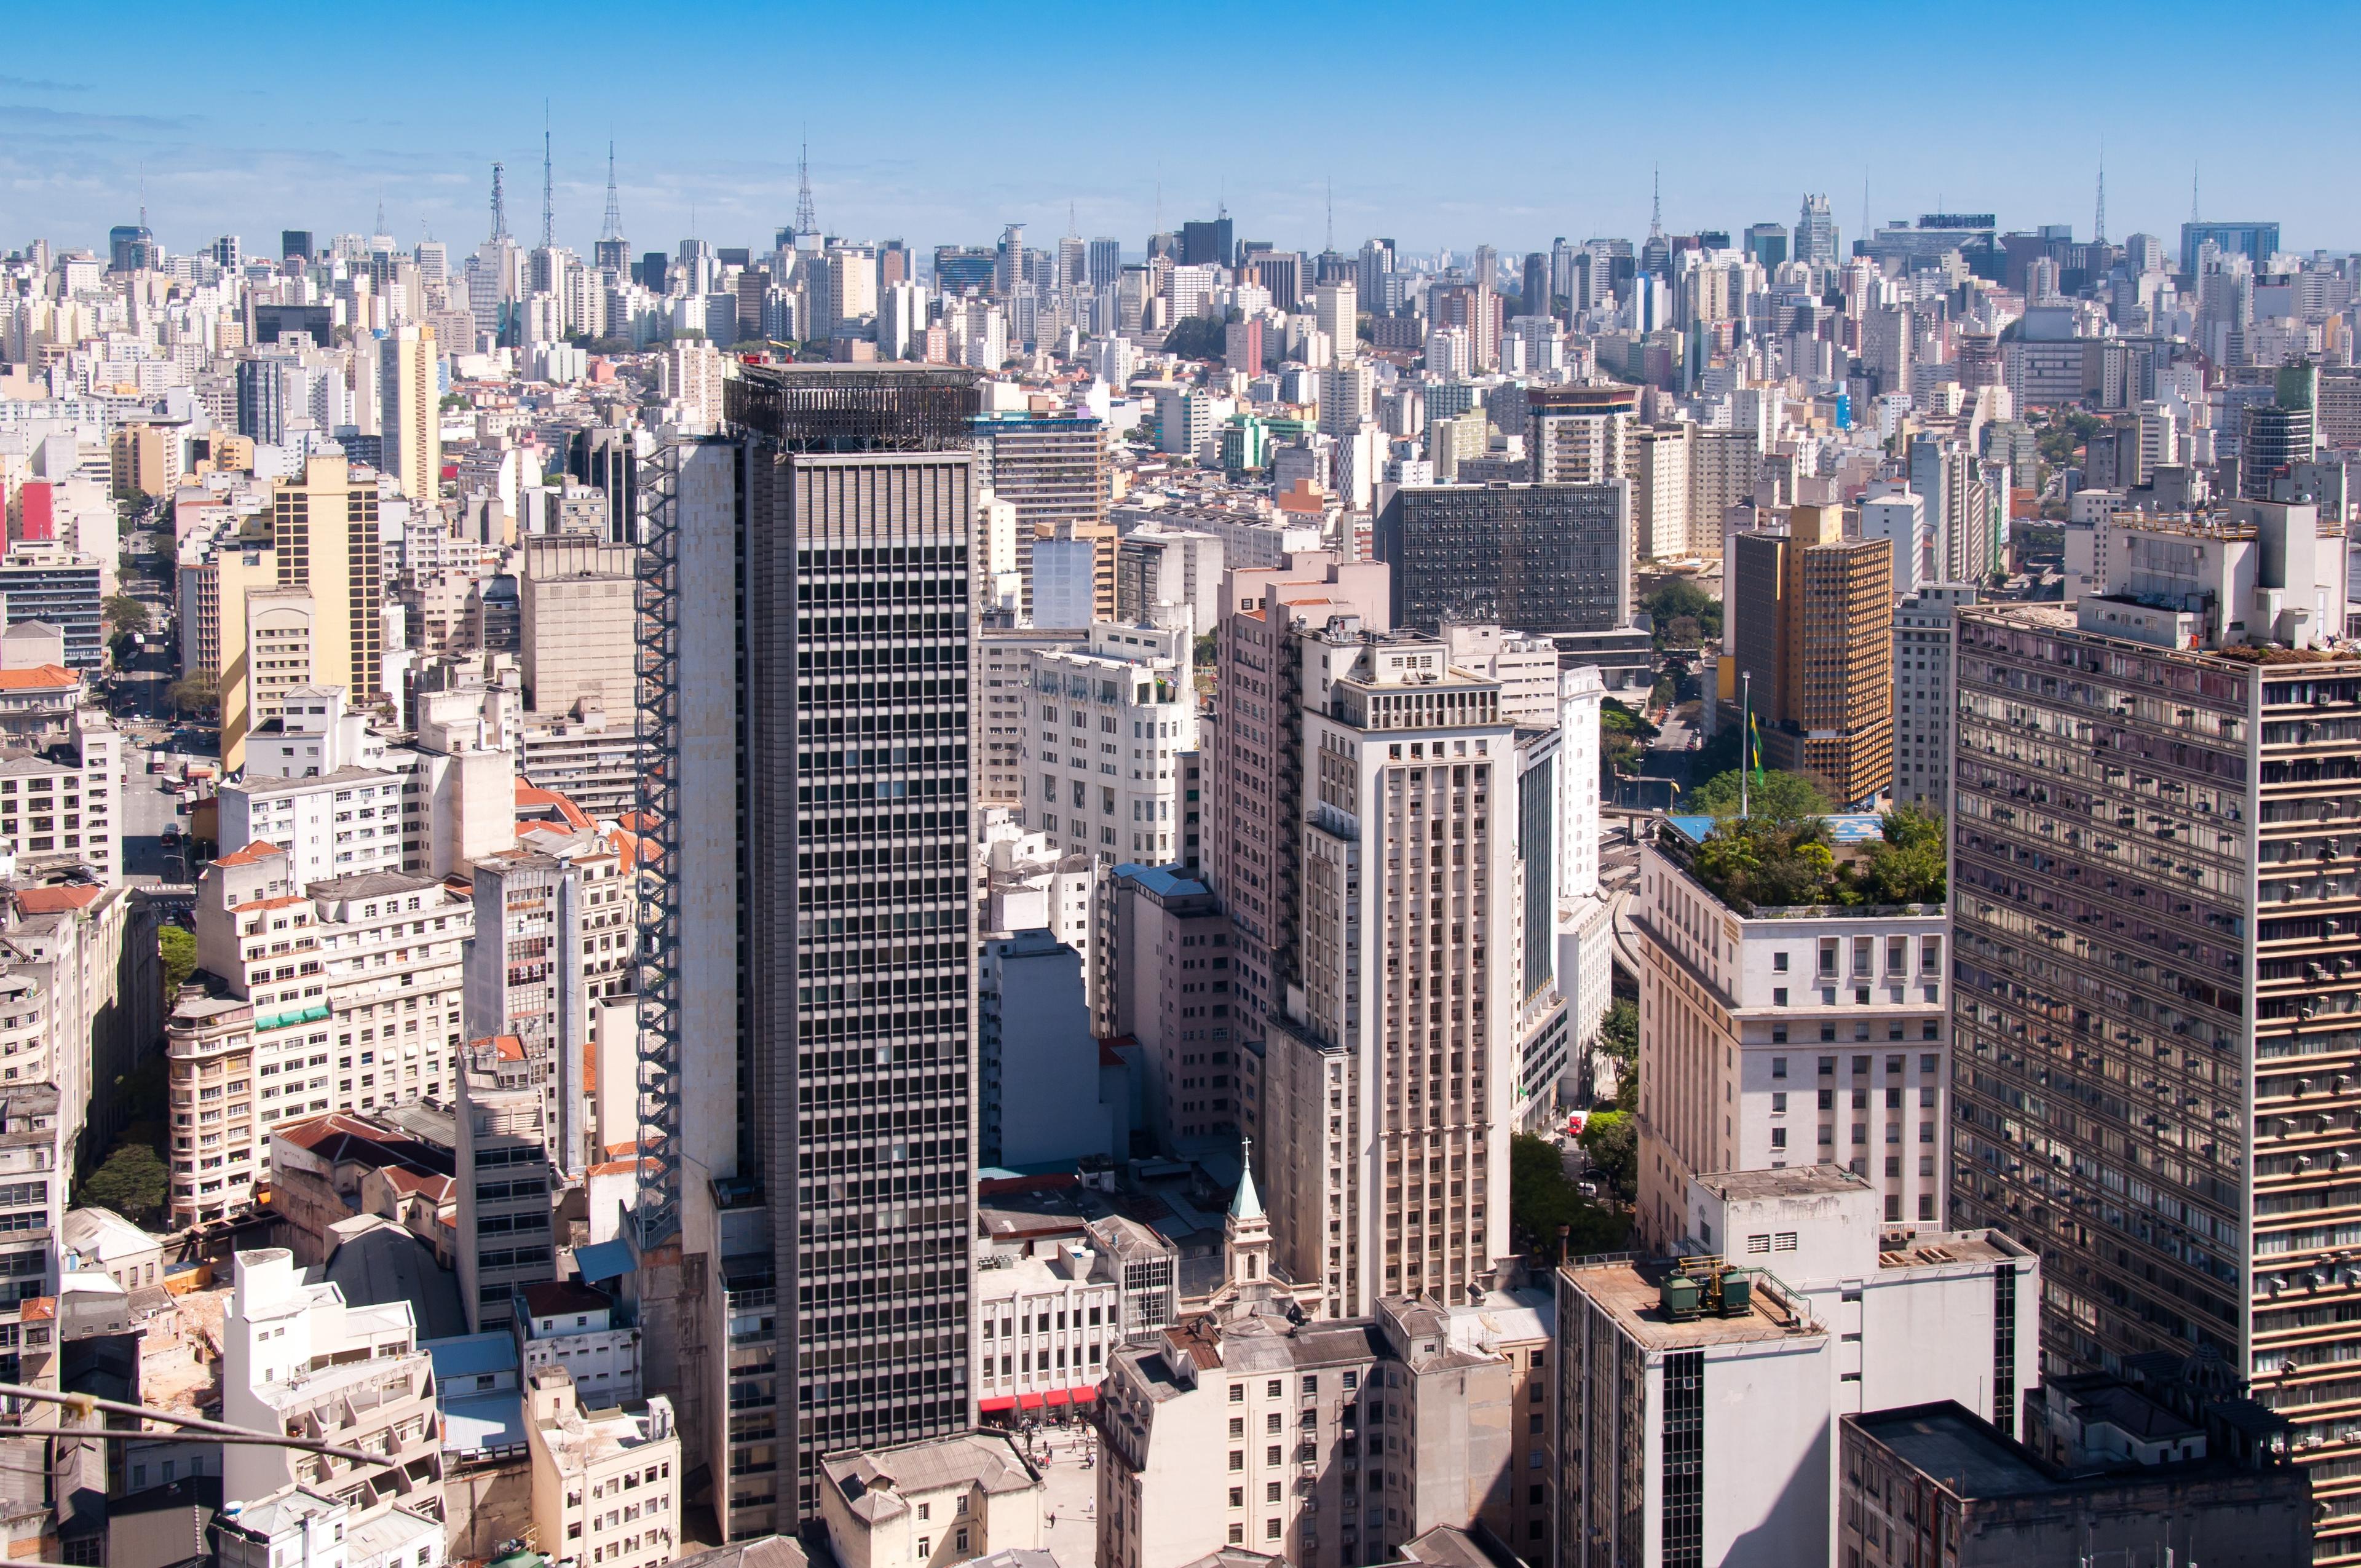 The São Paulo city, cover photo